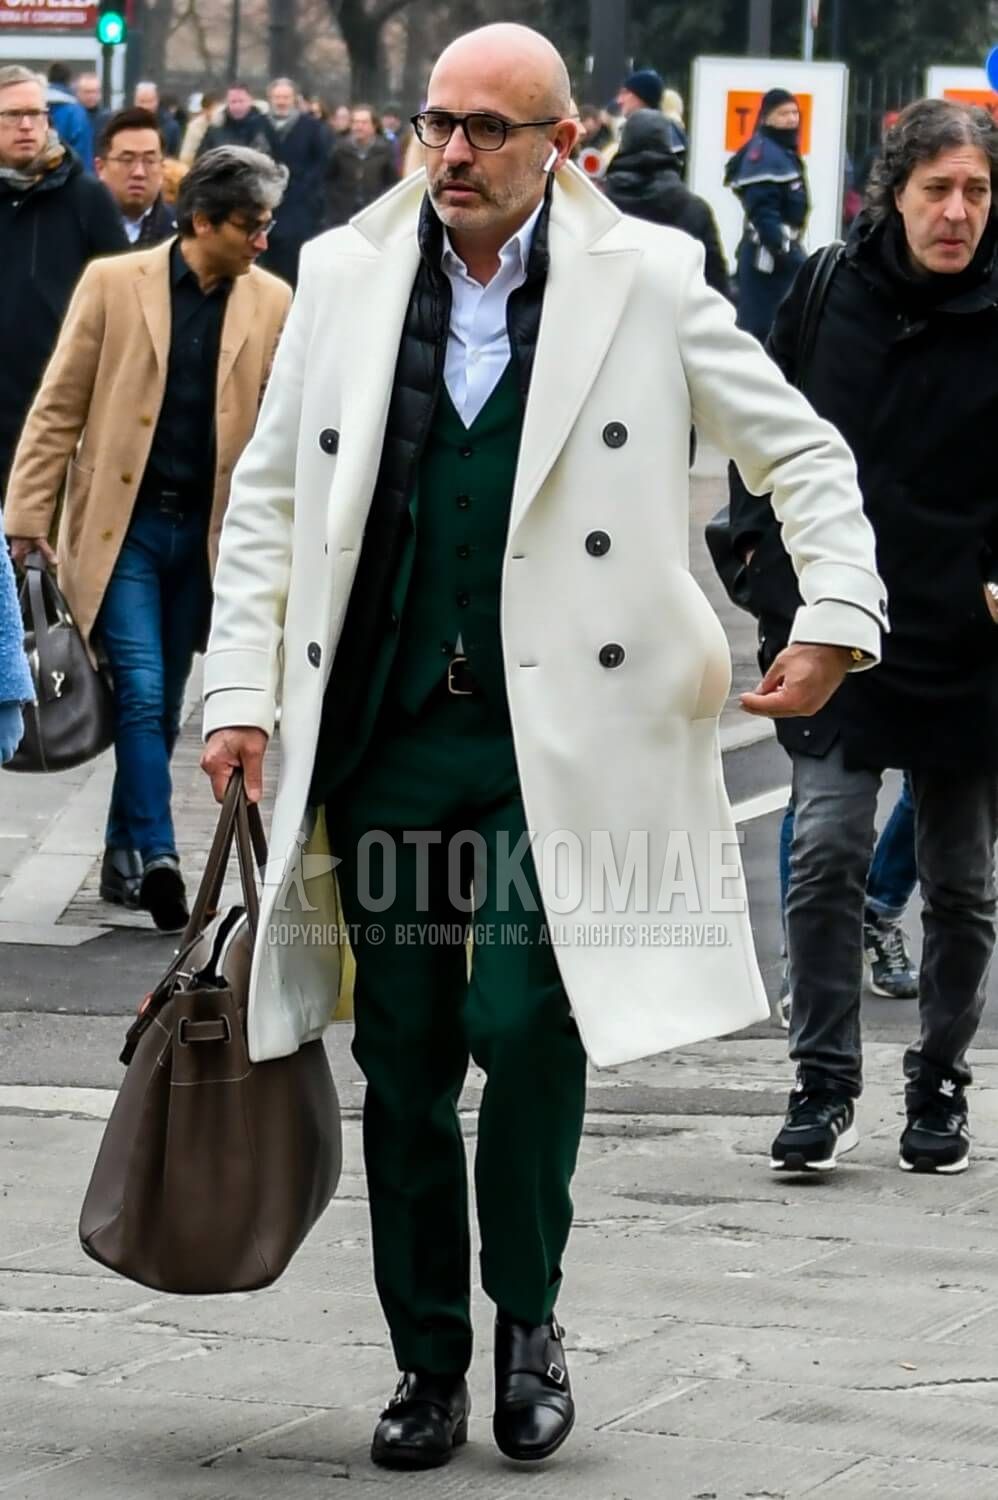 白コート メンズ特集 大人の男が参考にしたい注目の着こなしとアイテムを紹介 メンズファッションメディア Apgs Nsw